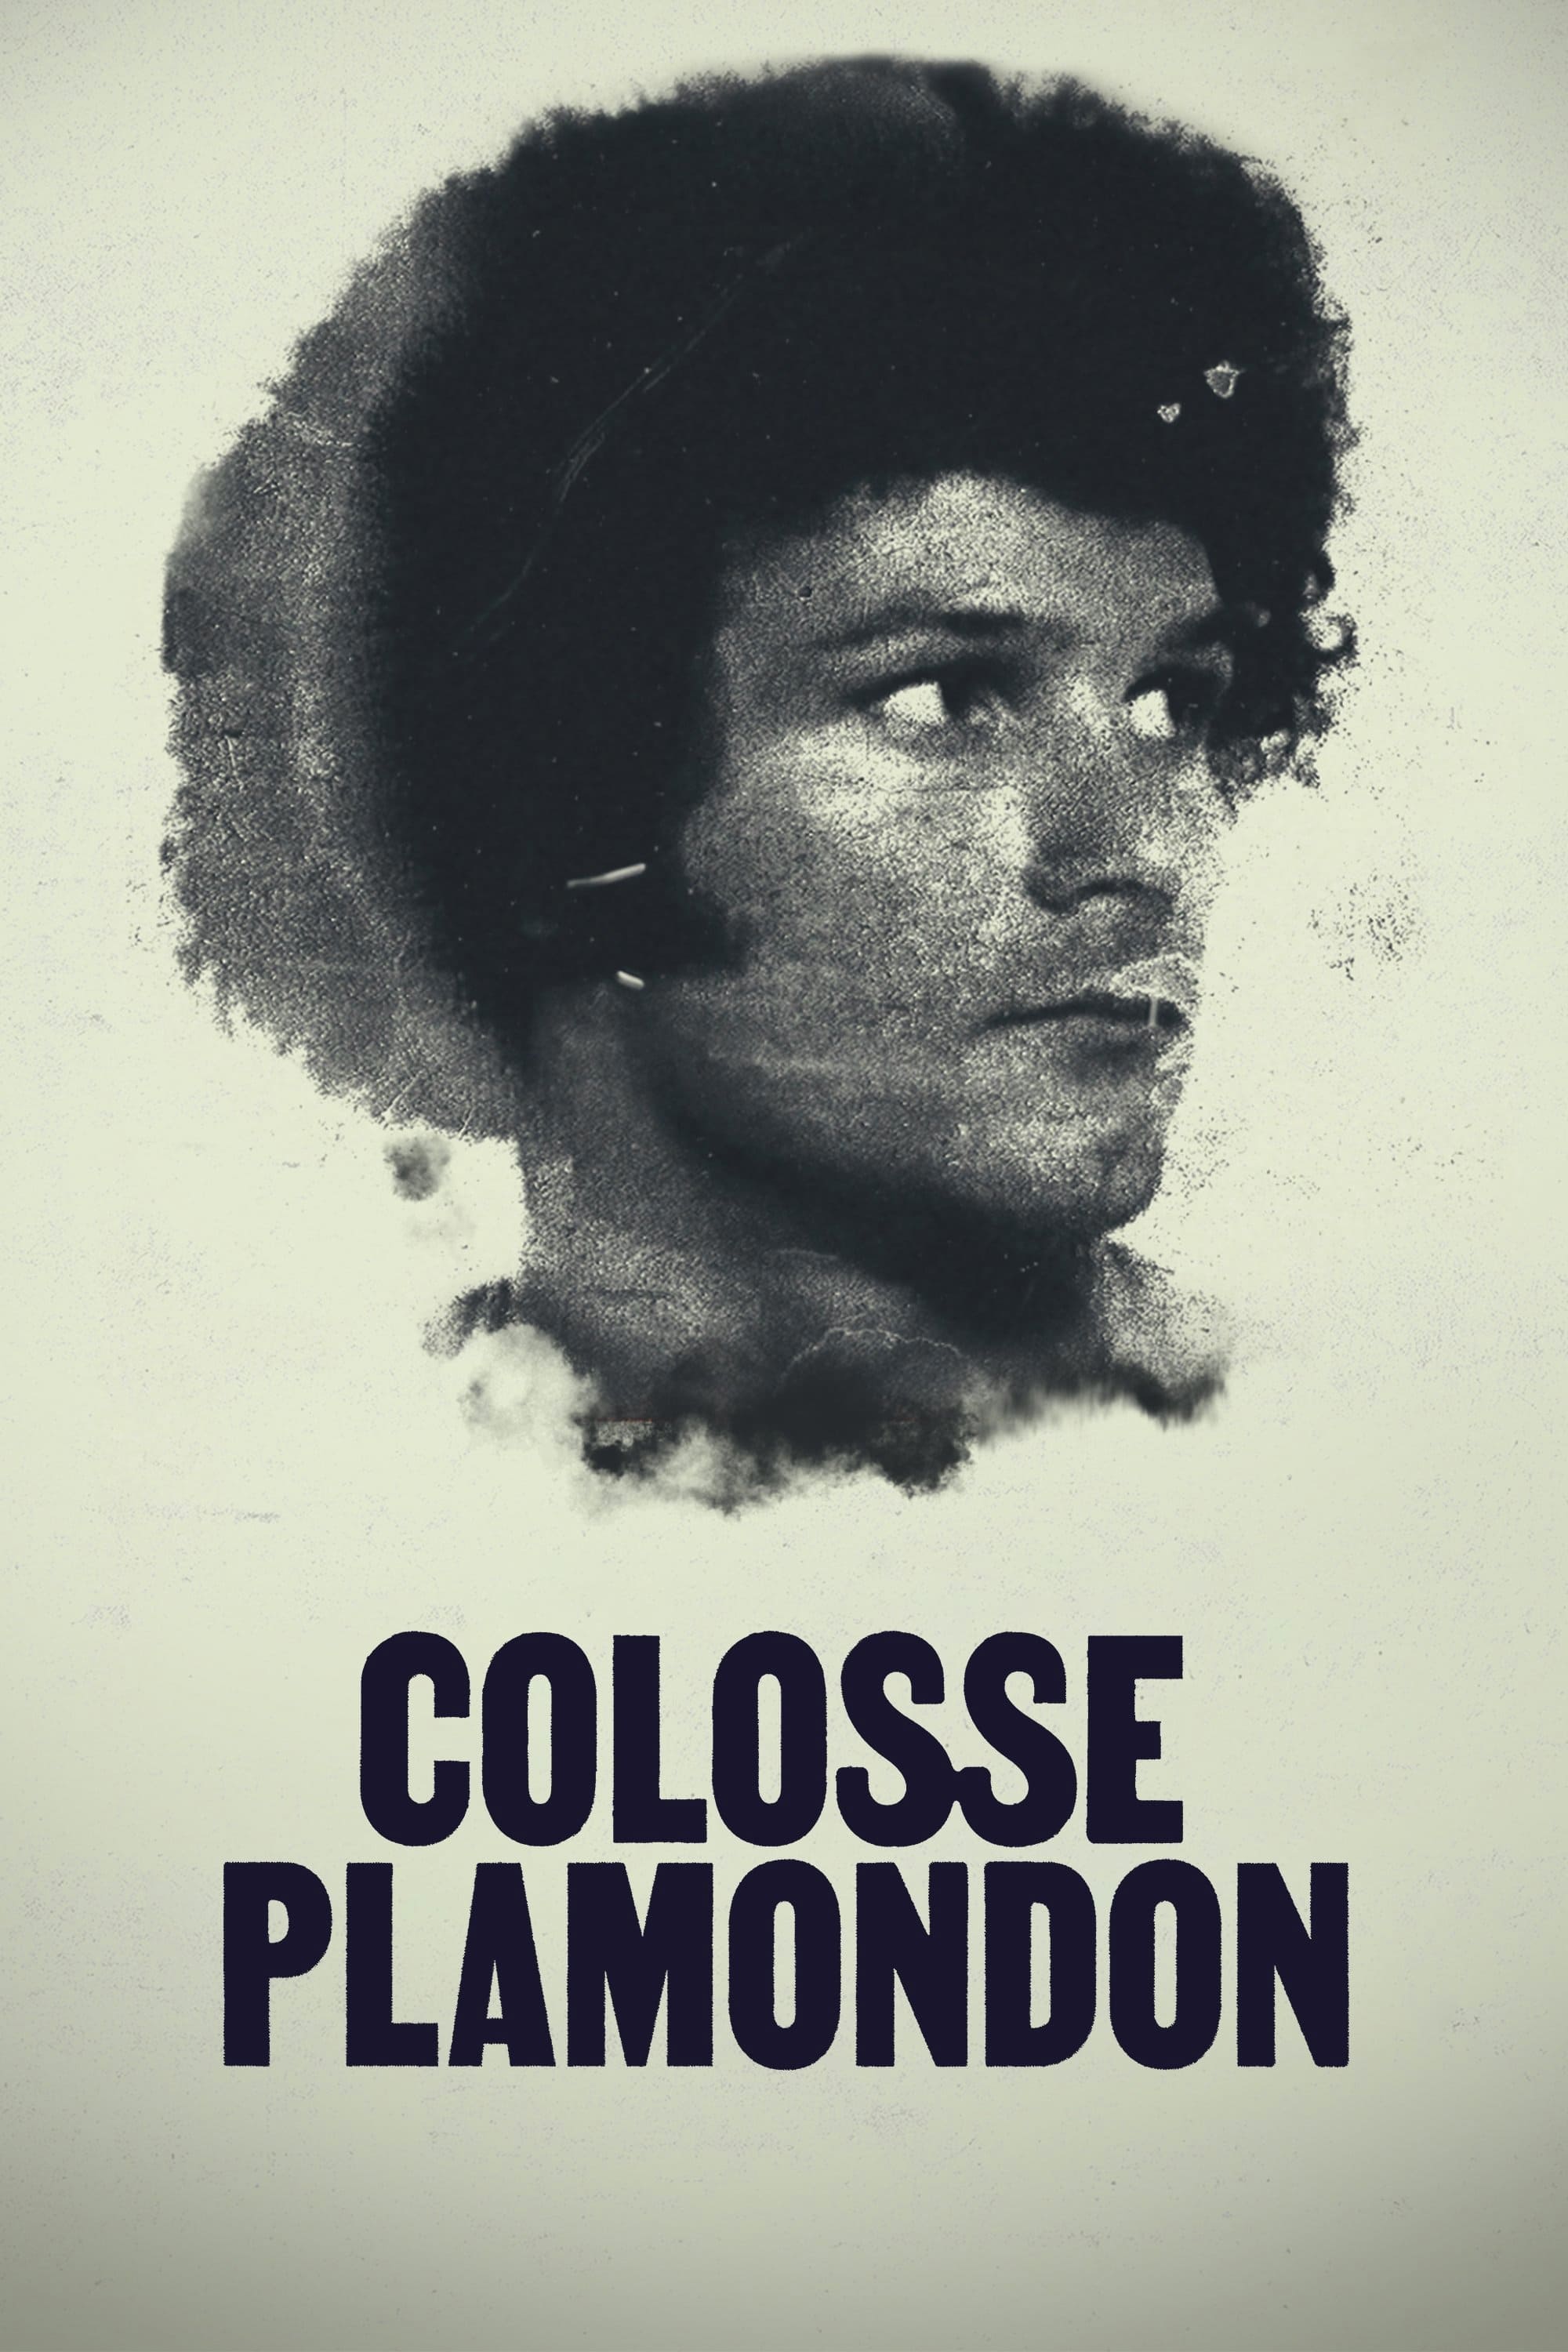 Colosse Plamondon